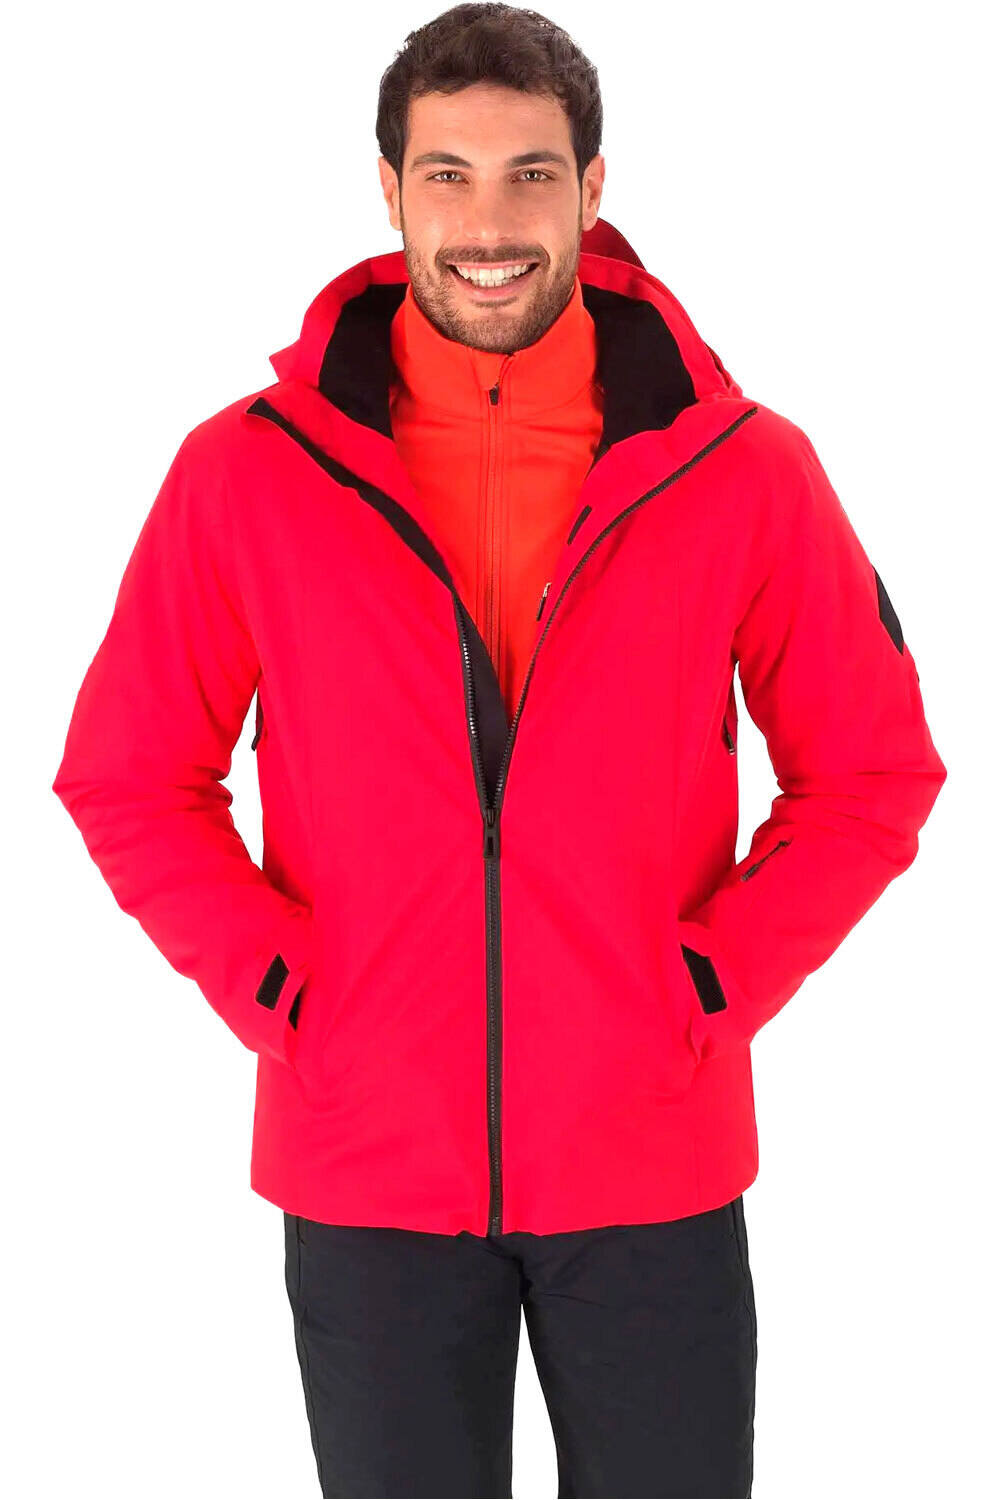 Rossignol chaqueta esquí hombre CONTROLE JKT vista frontal